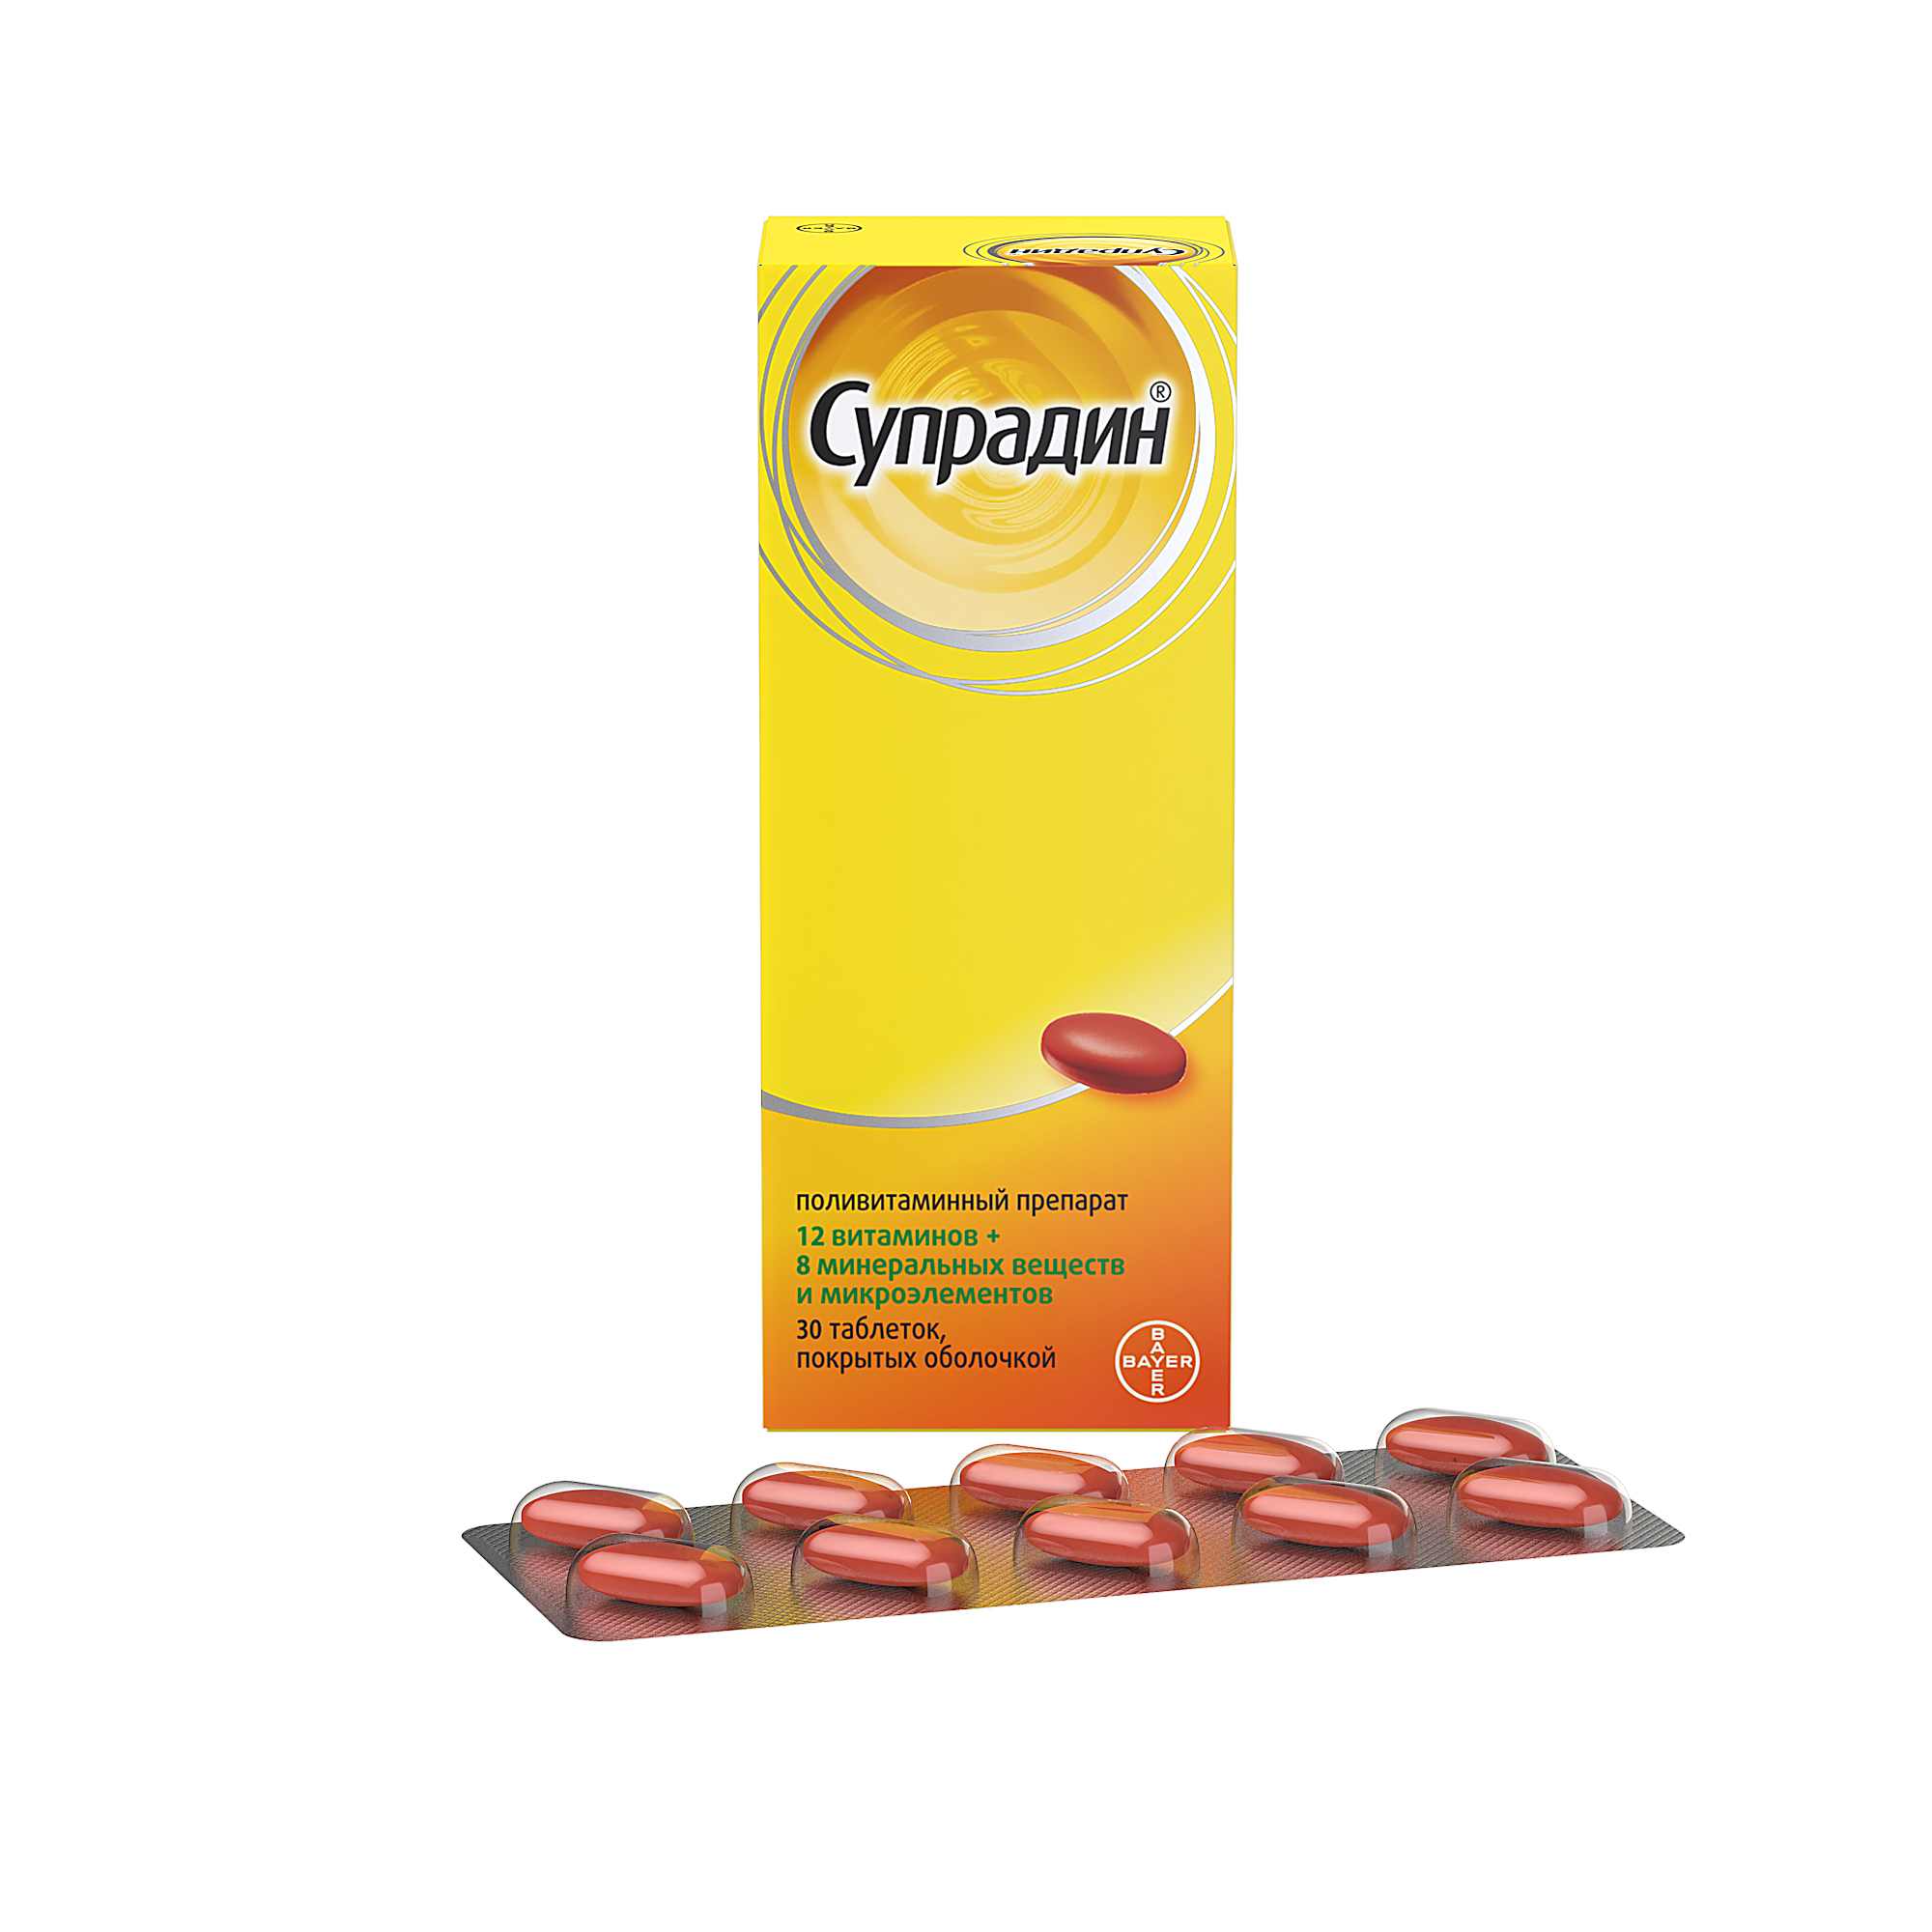 Купить Супрадин таблетки 30 шт., Bayer